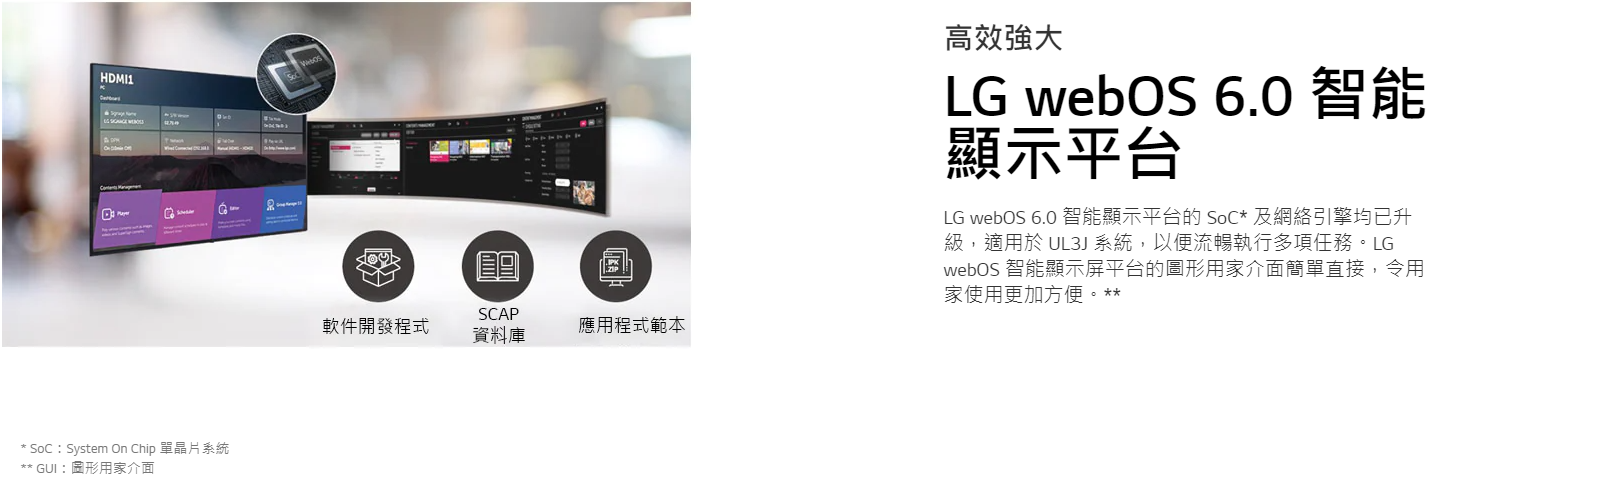 LG 樂金 86UL3J-B 86吋 UL3J系列 webOS UHD 顯示屏